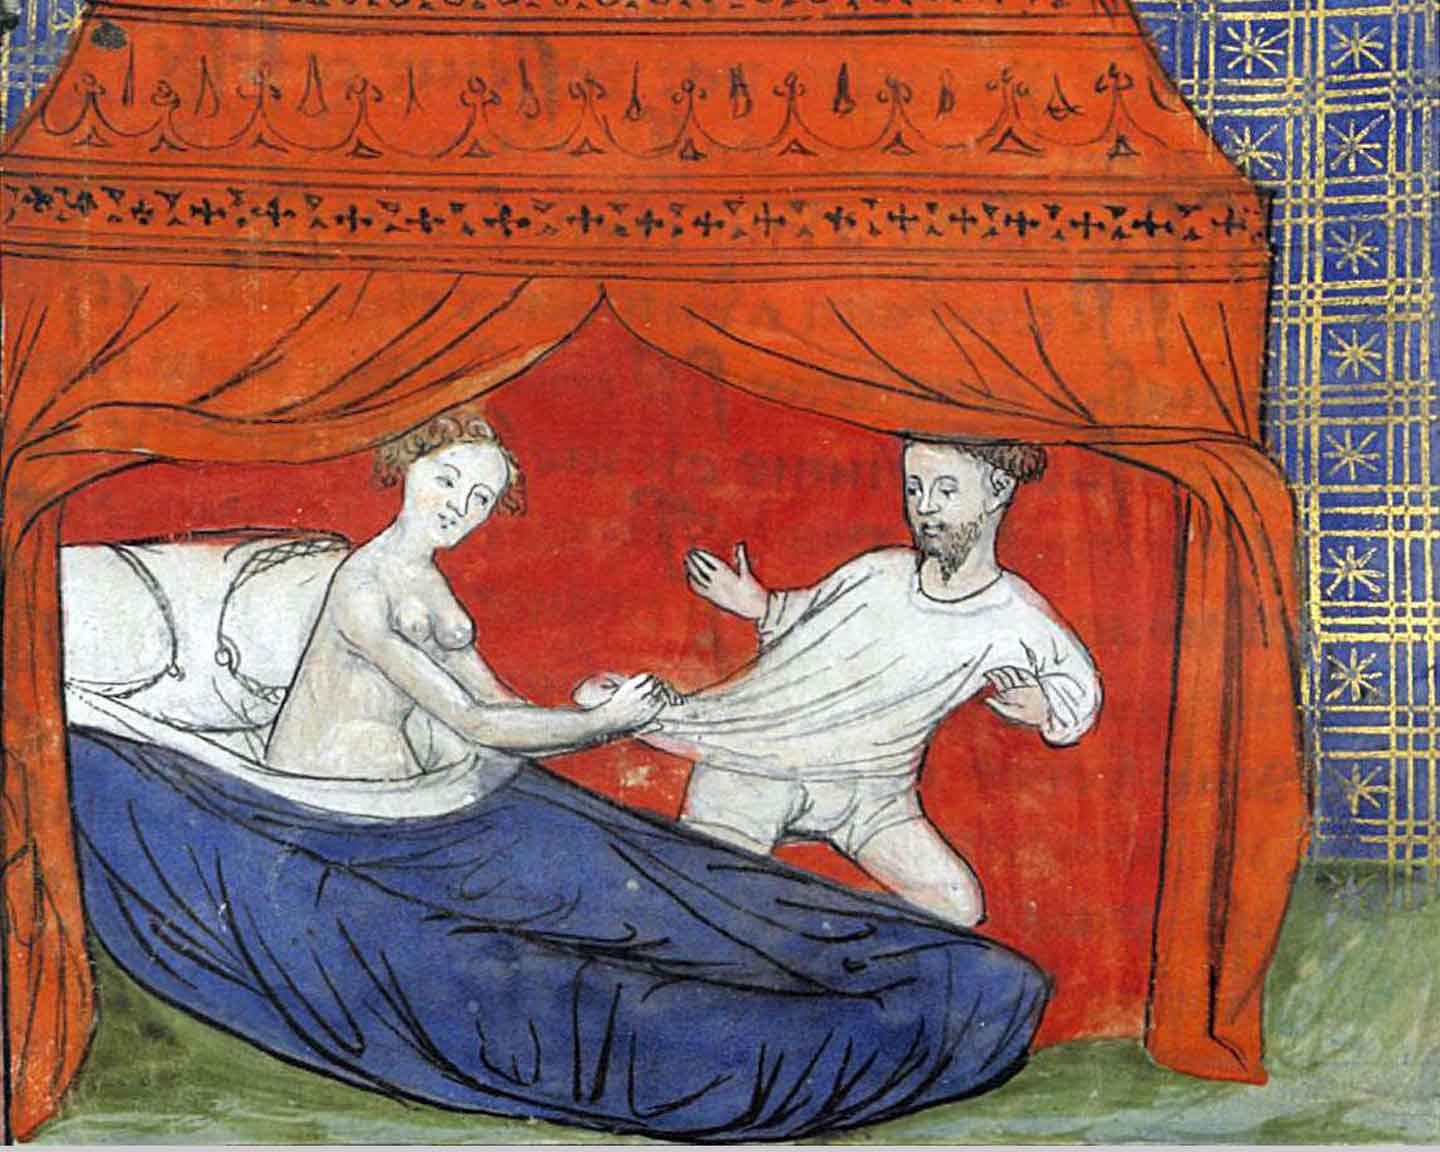 Секс в средневековье - порно рассказы и секс истории для взрослых бесплатно |